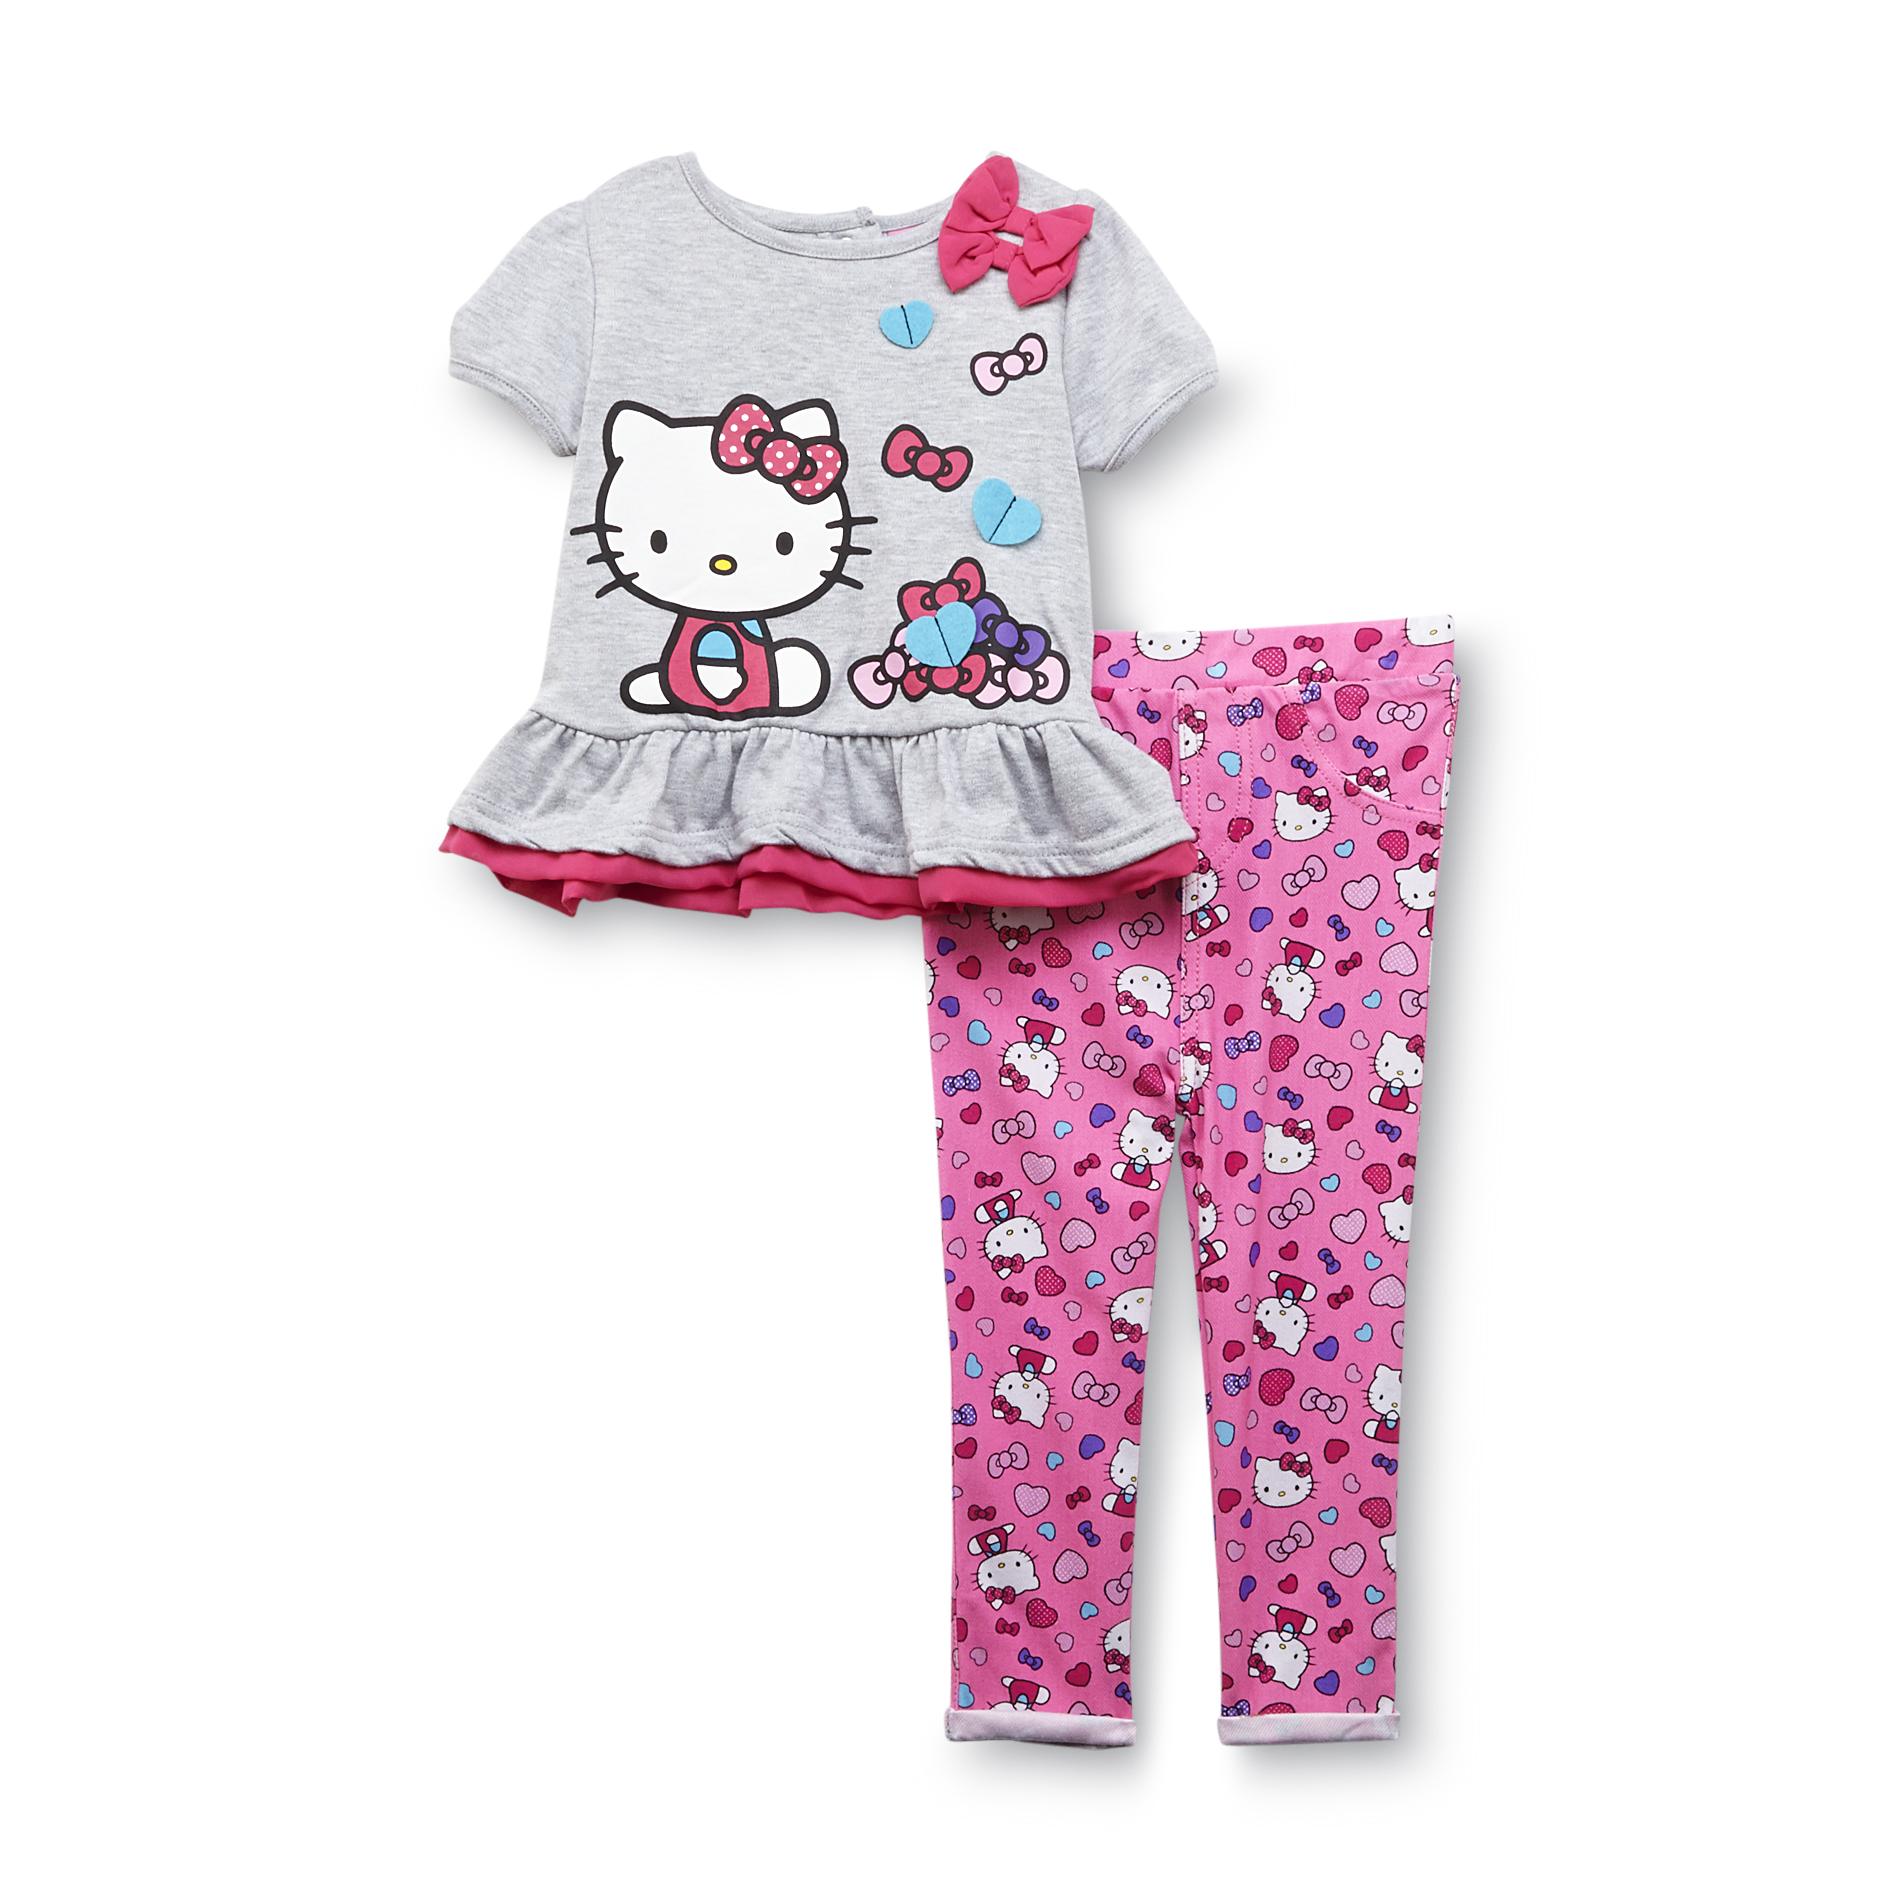 Hello Kitty Infant & Toddler Girl's Short-Sleeve Top & Jeggings